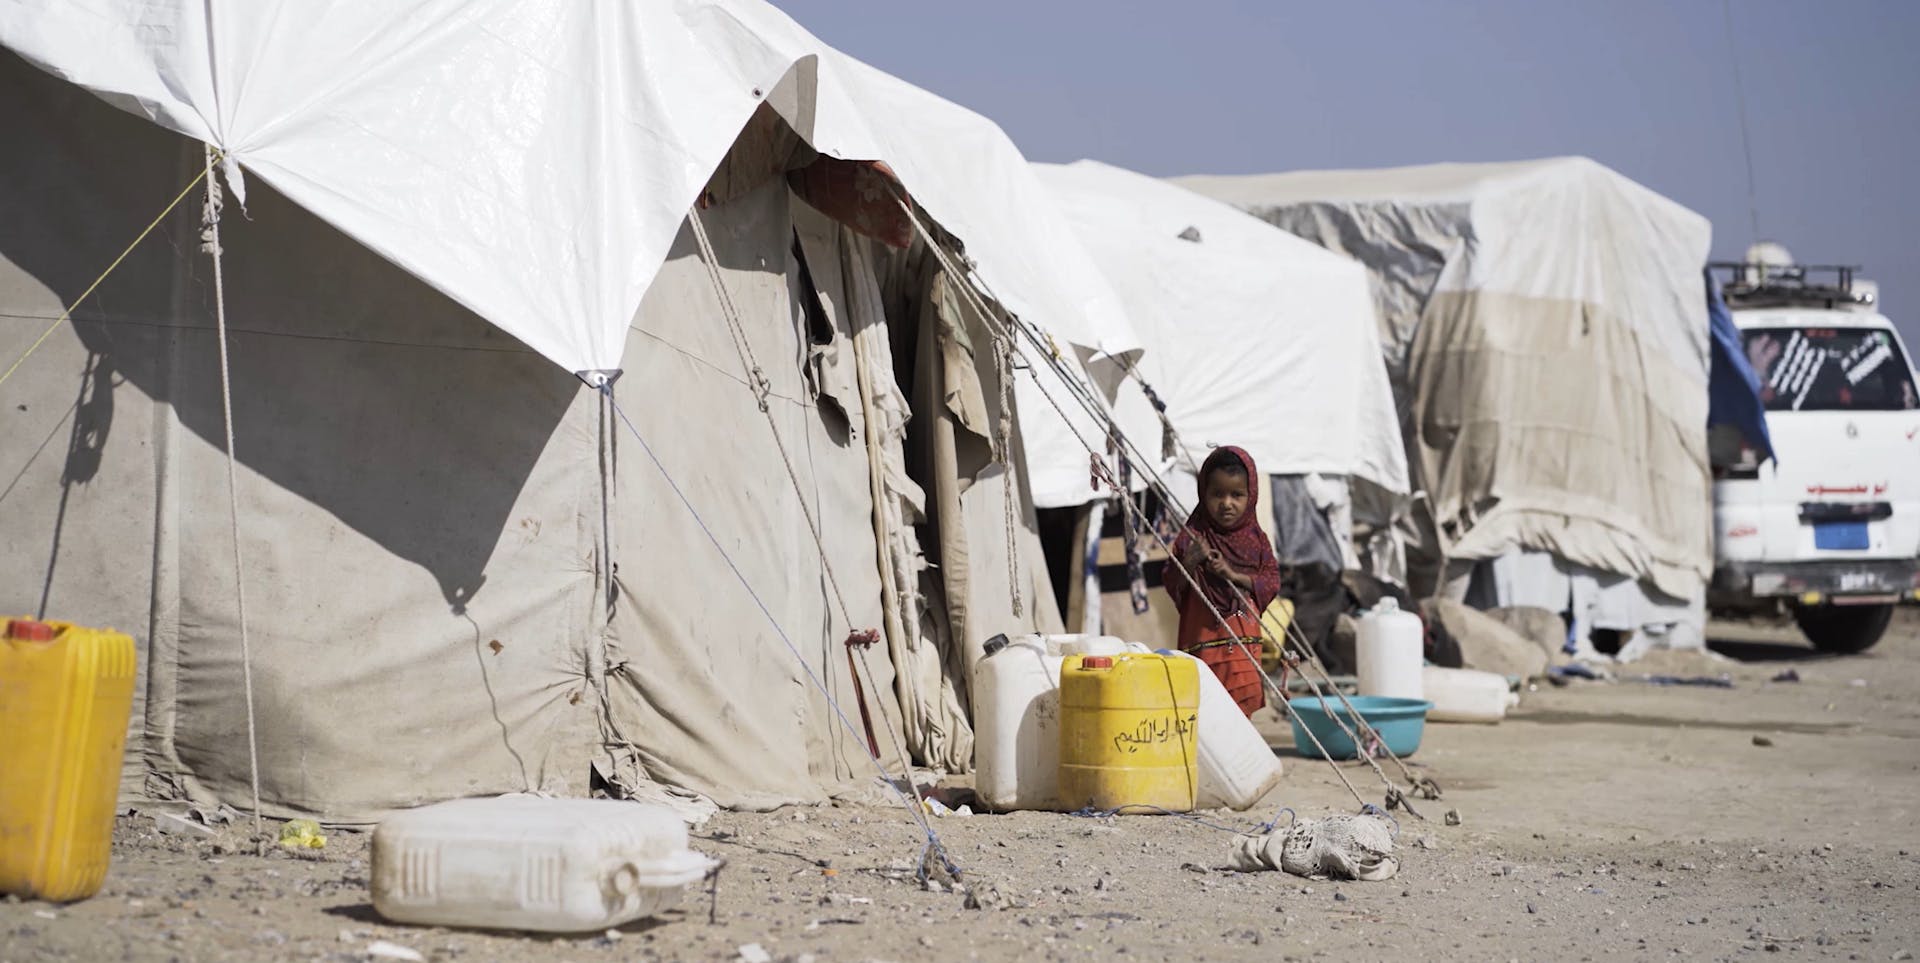 Meisje staat bij tent in Jemen